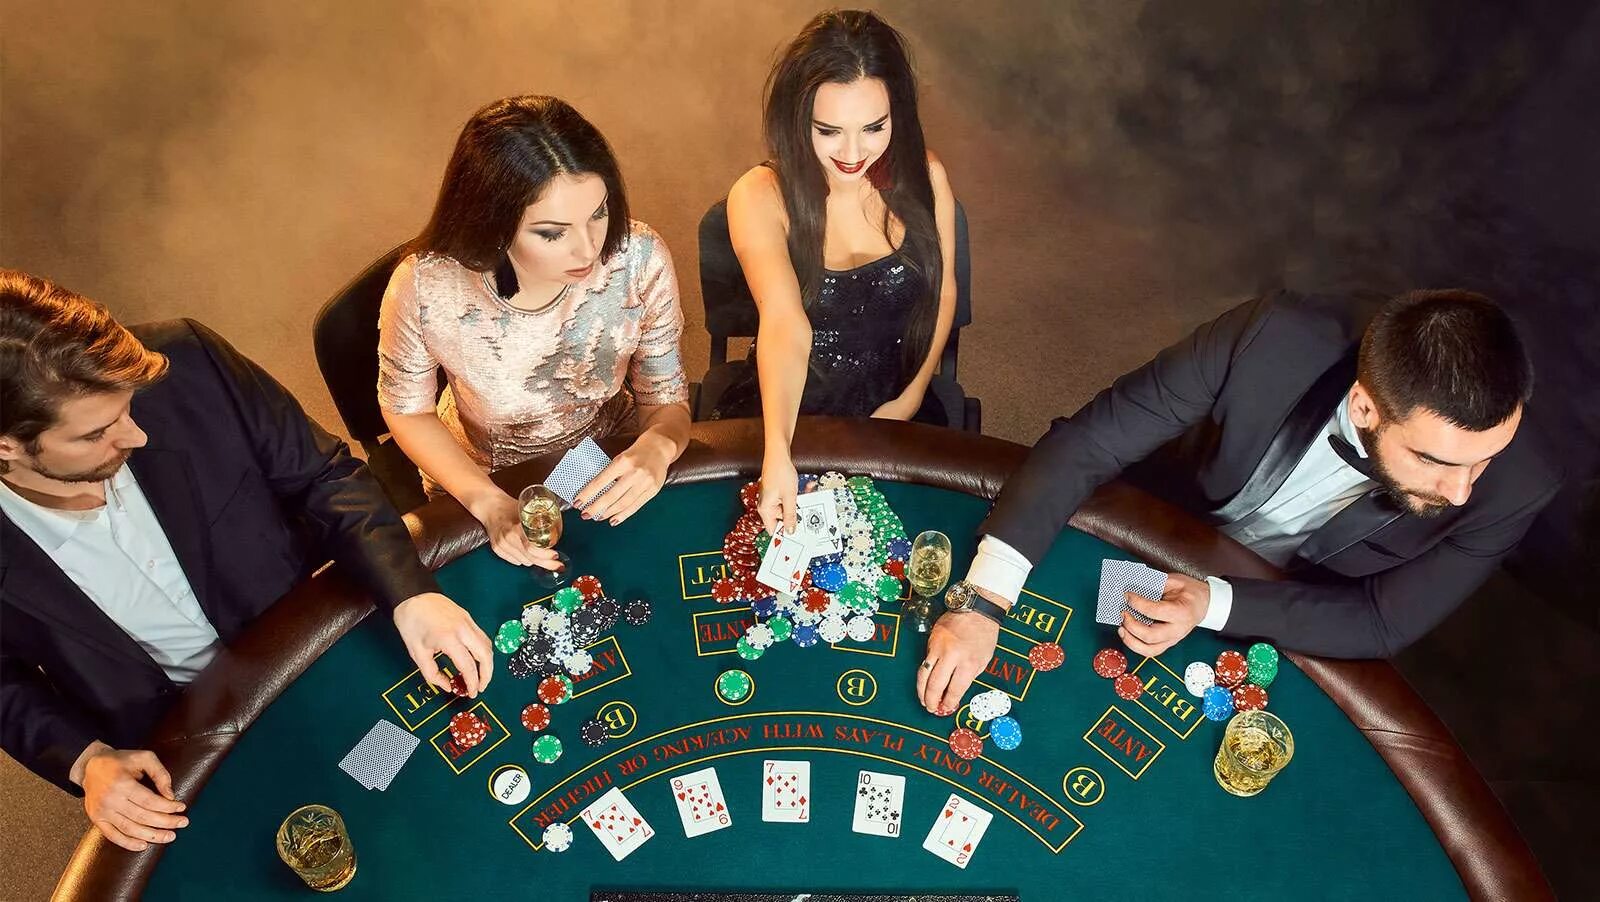 Игры в заведениях. Игра в Покер. Казино. Казино Покер. Люди за покерным столом.